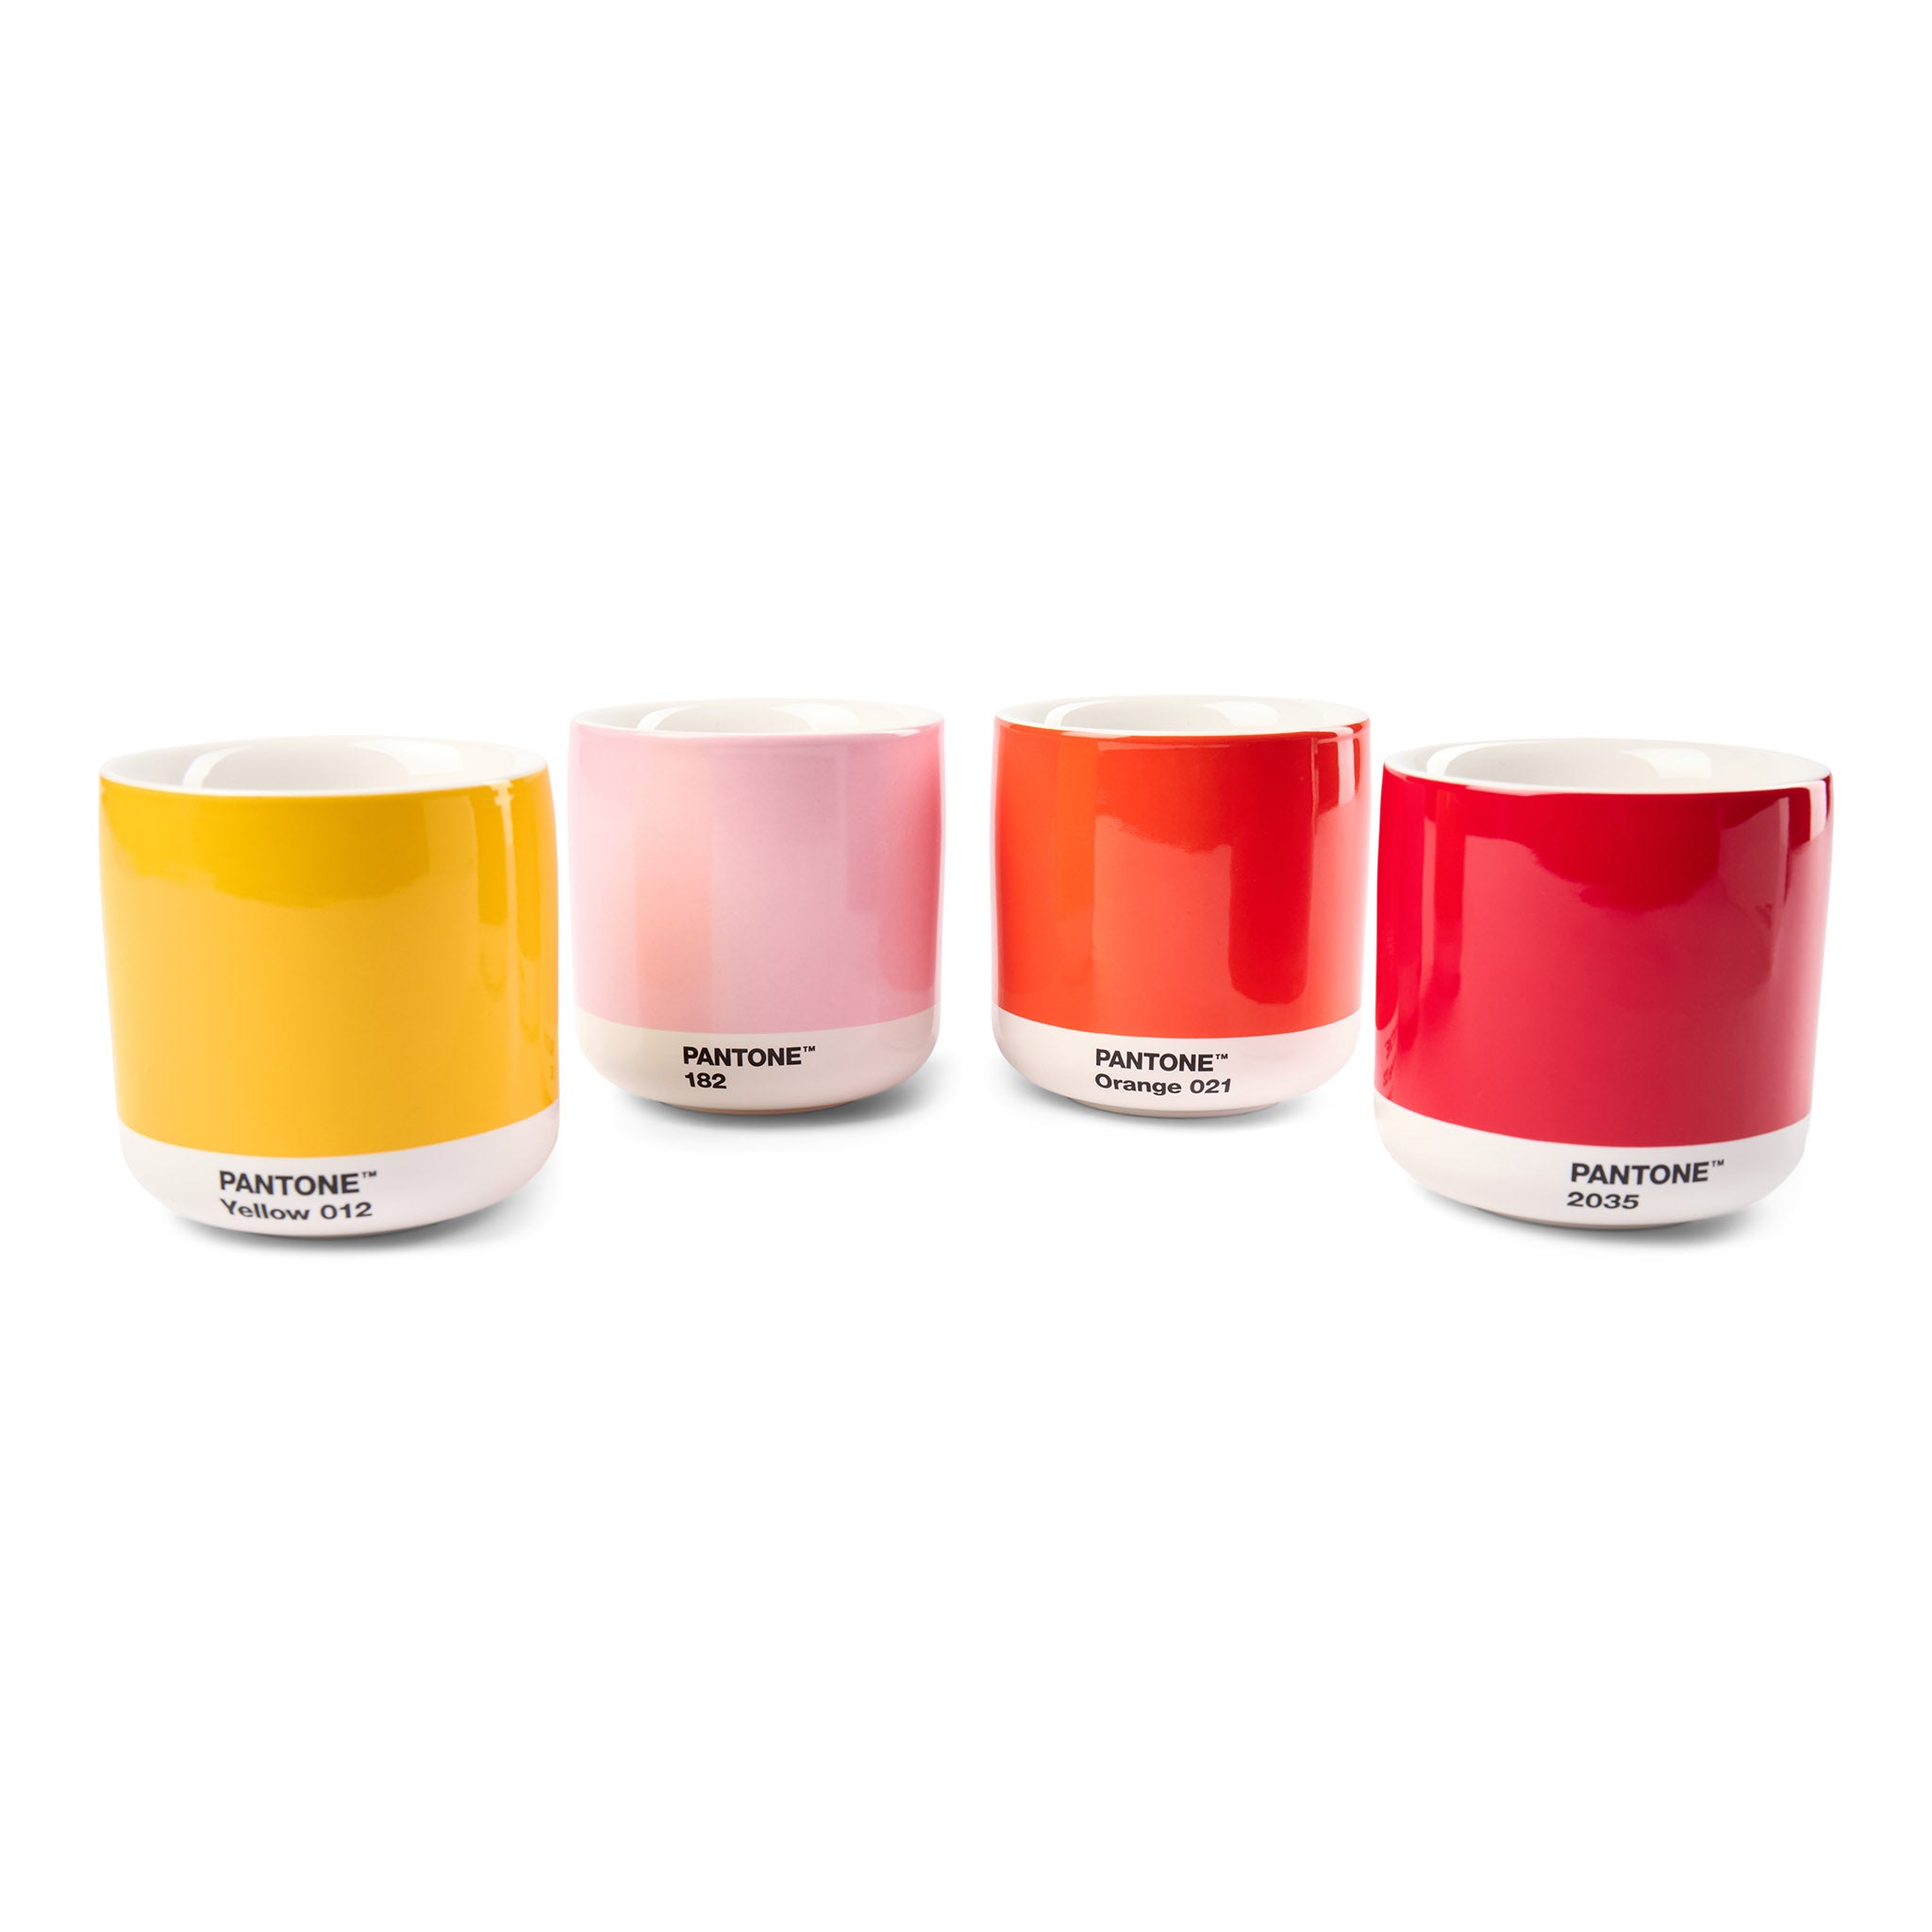 Latte Macchiato Set aus 4 doppelwandigen Porzellanbechern ohne Henkel in Pantone Farben Yellow 012, Light Pink 182, Orange 021 und Red 2035